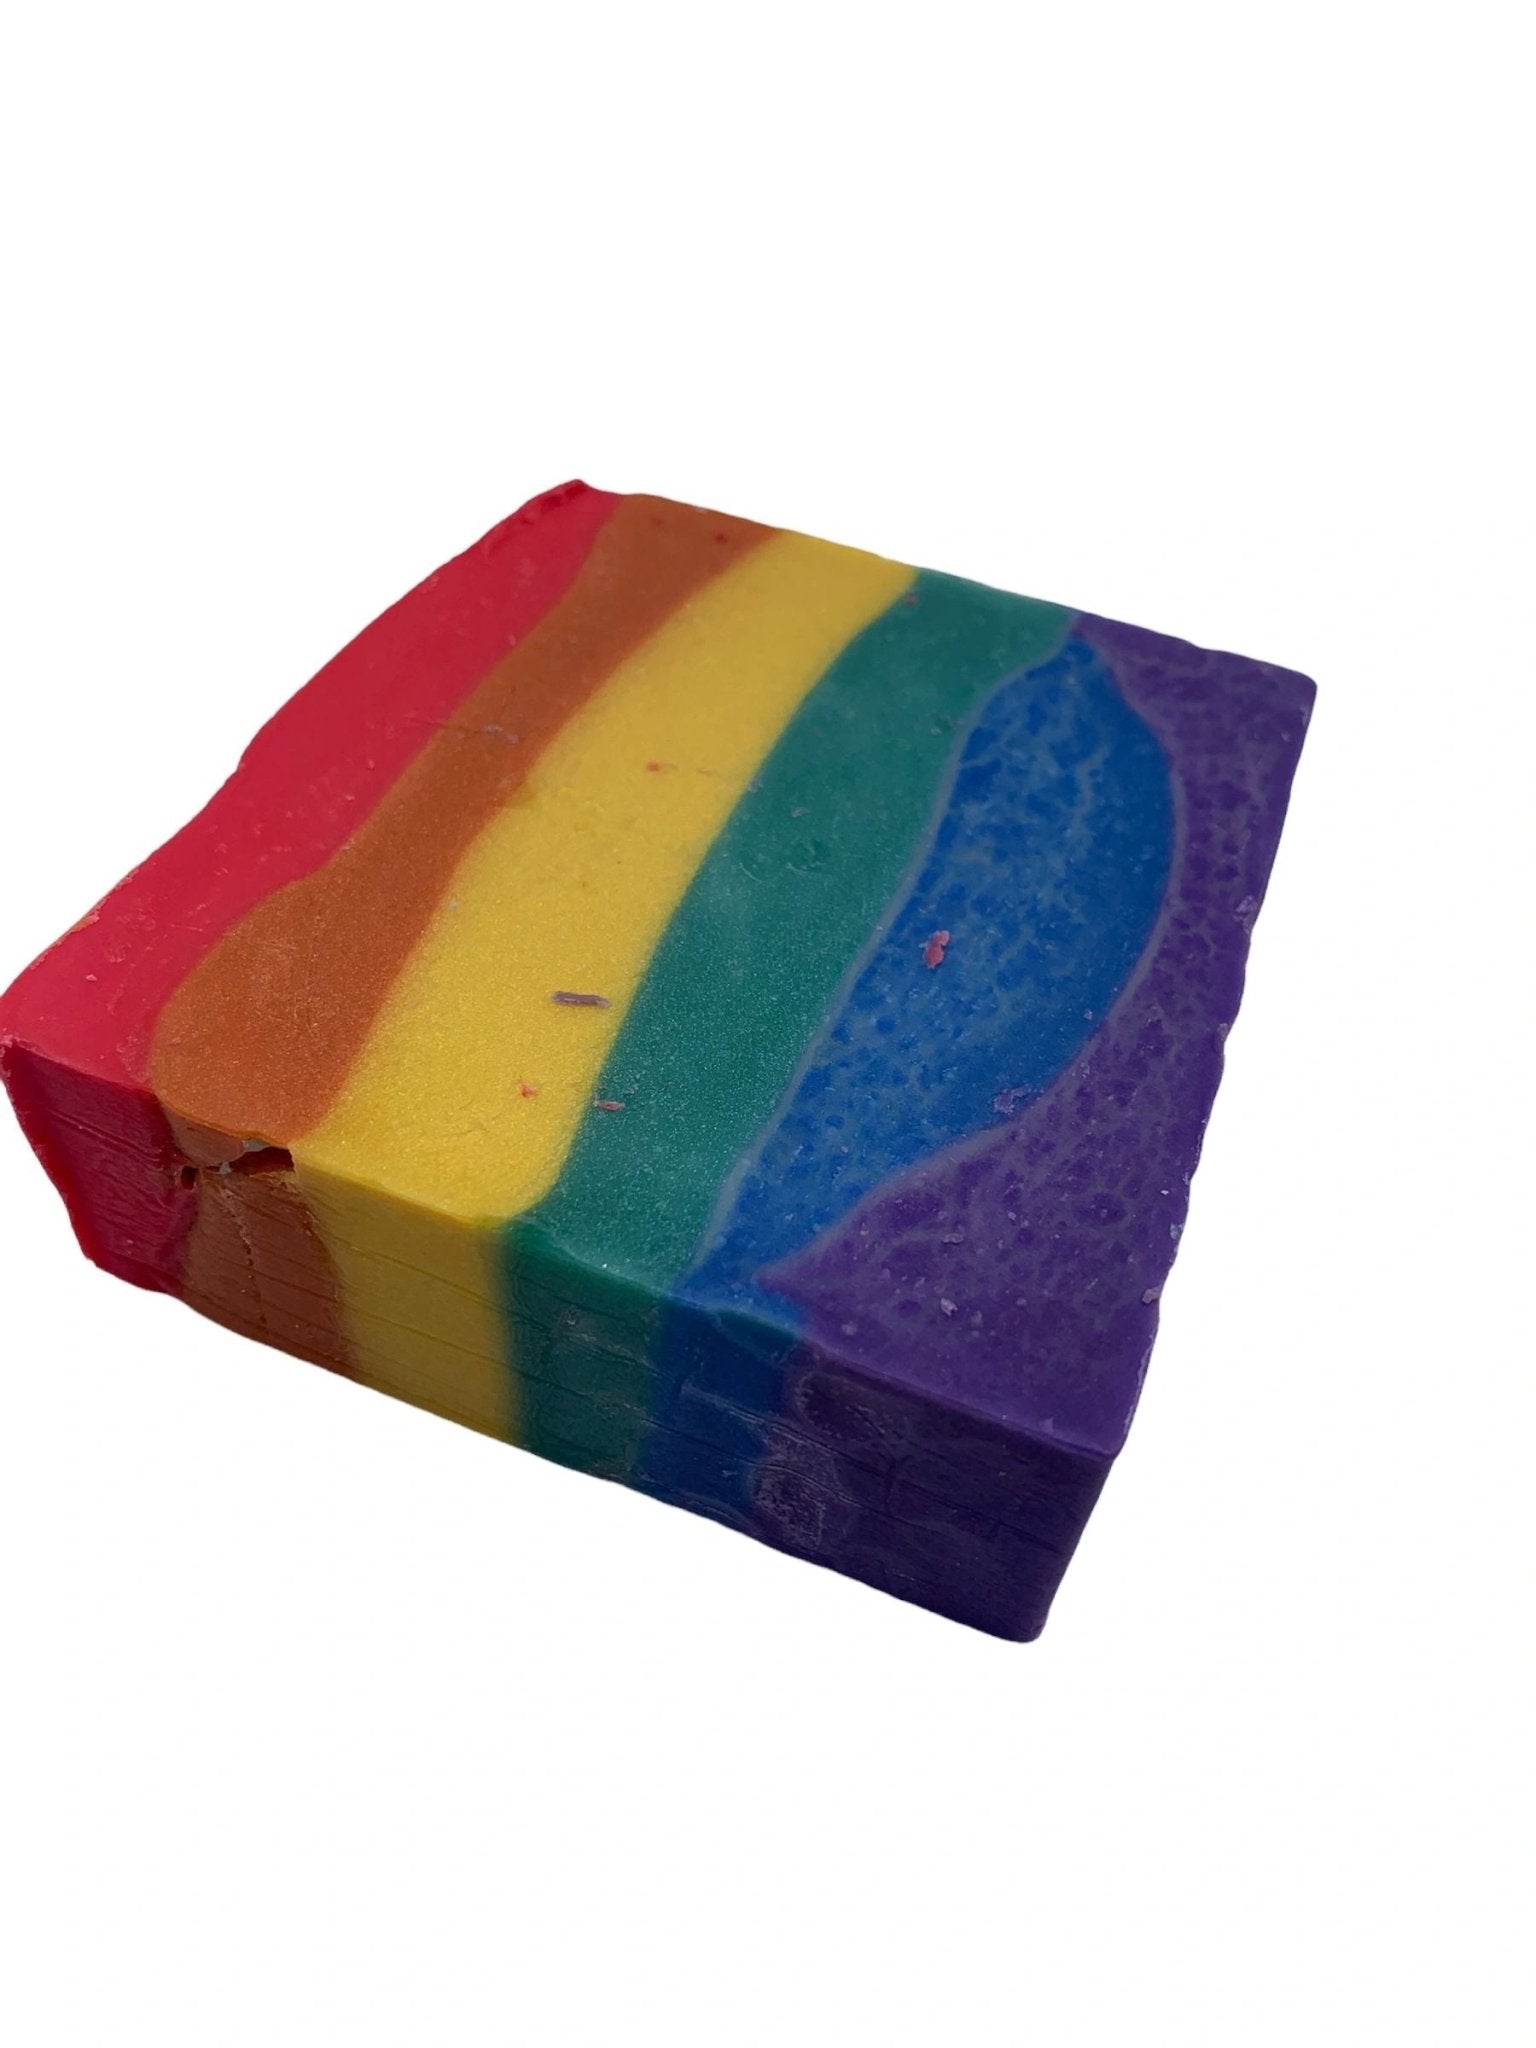 Rainbow Pride Soap Bar - Organically Bath & Beauty